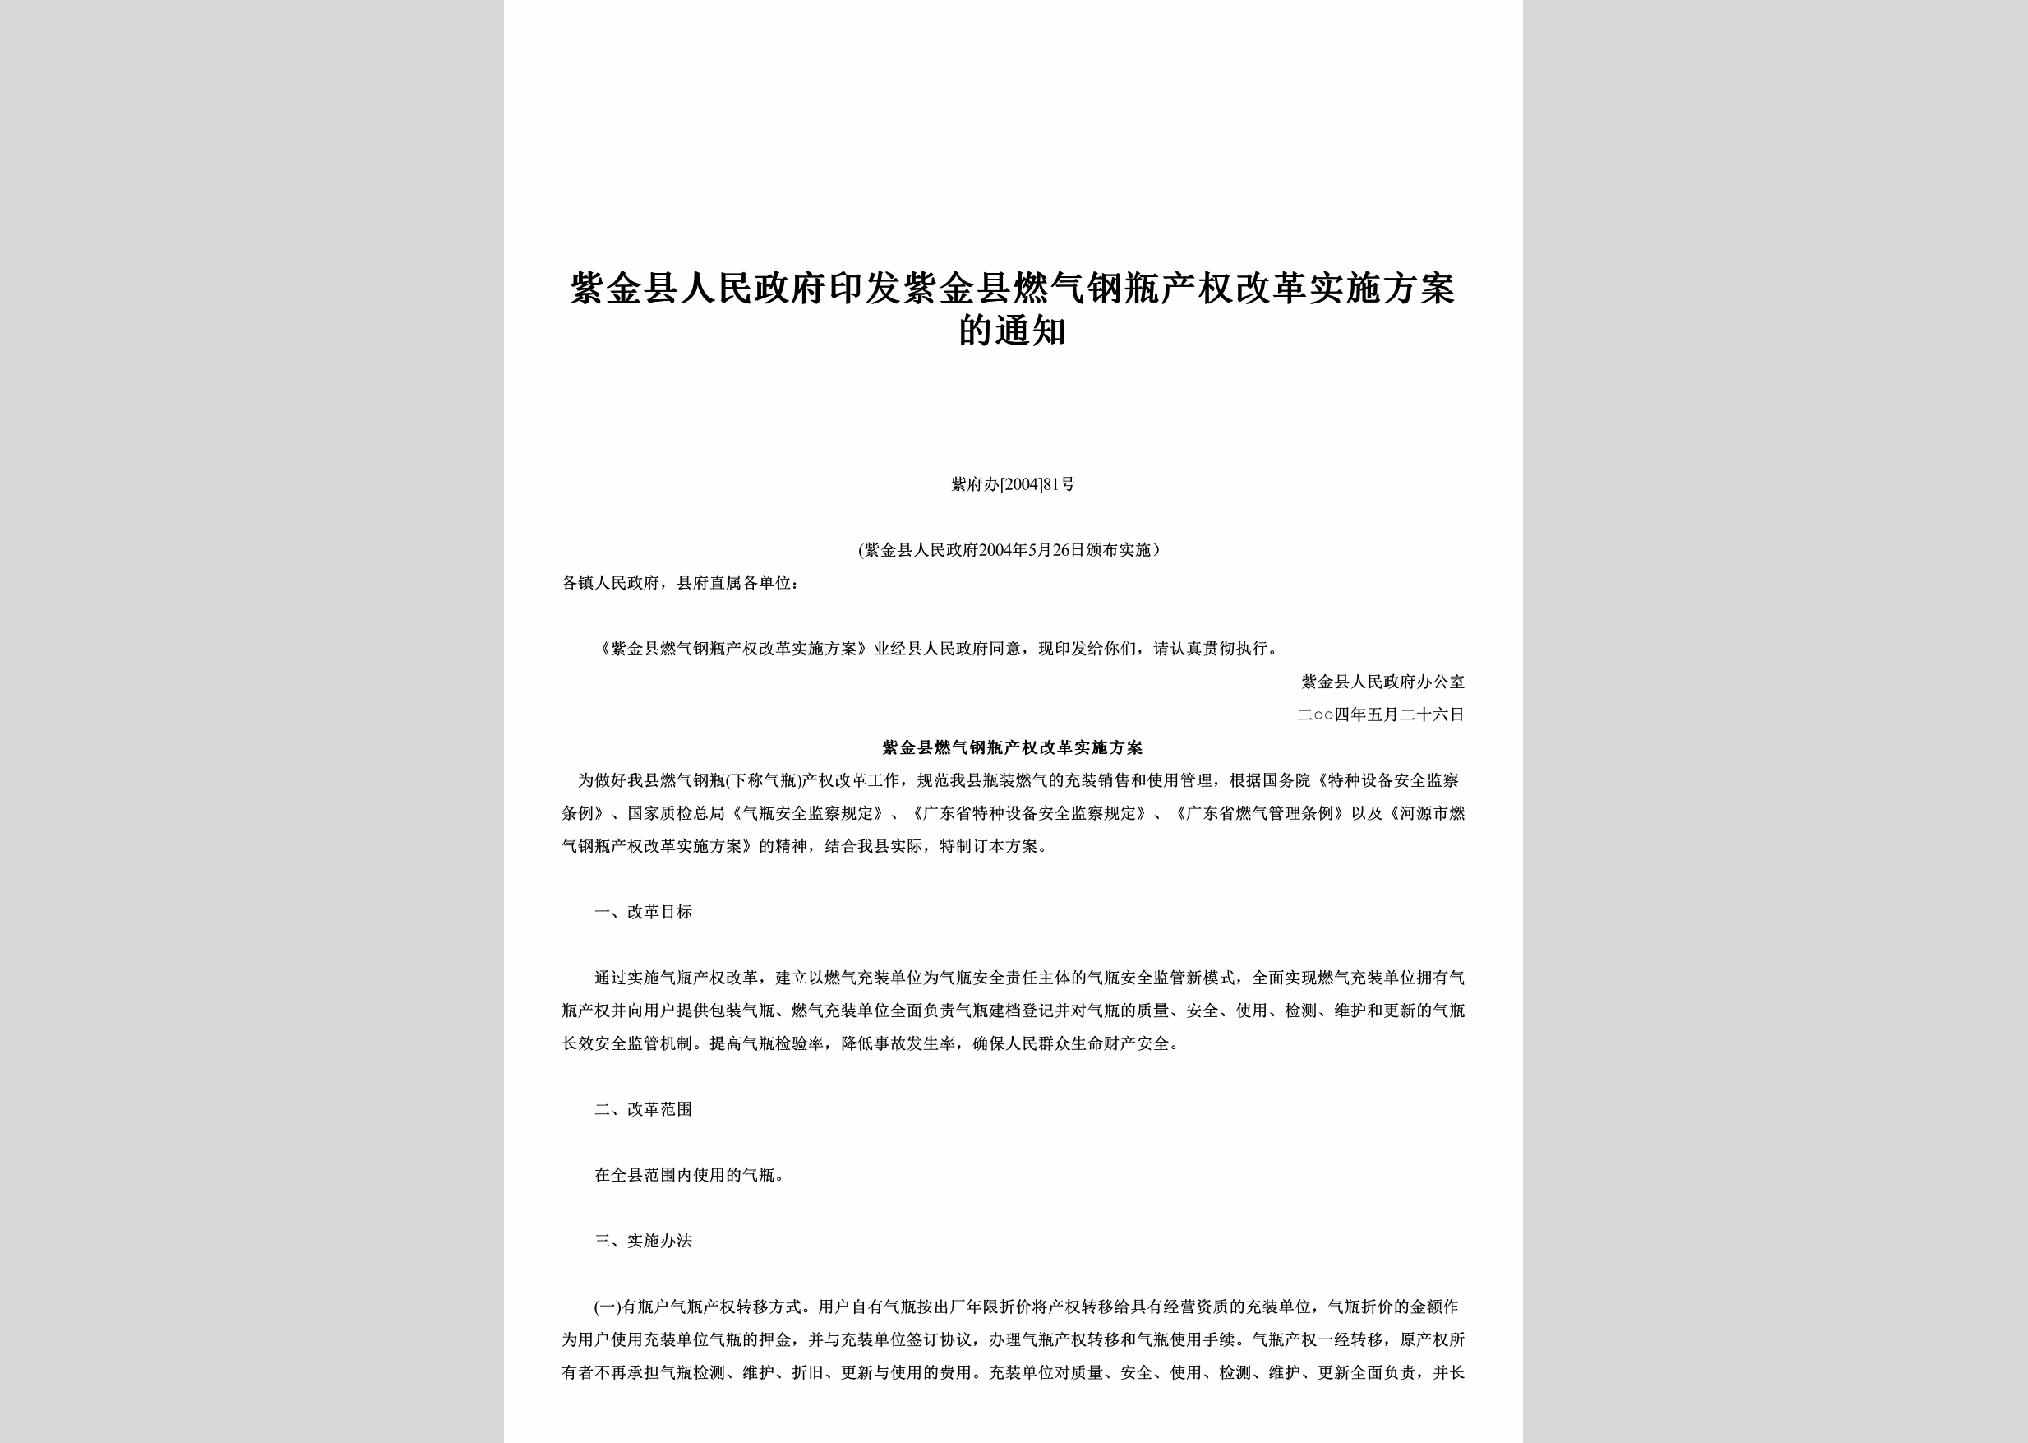 紫府办[2004]81号：印发紫金县燃气钢瓶产权改革实施方案的通知